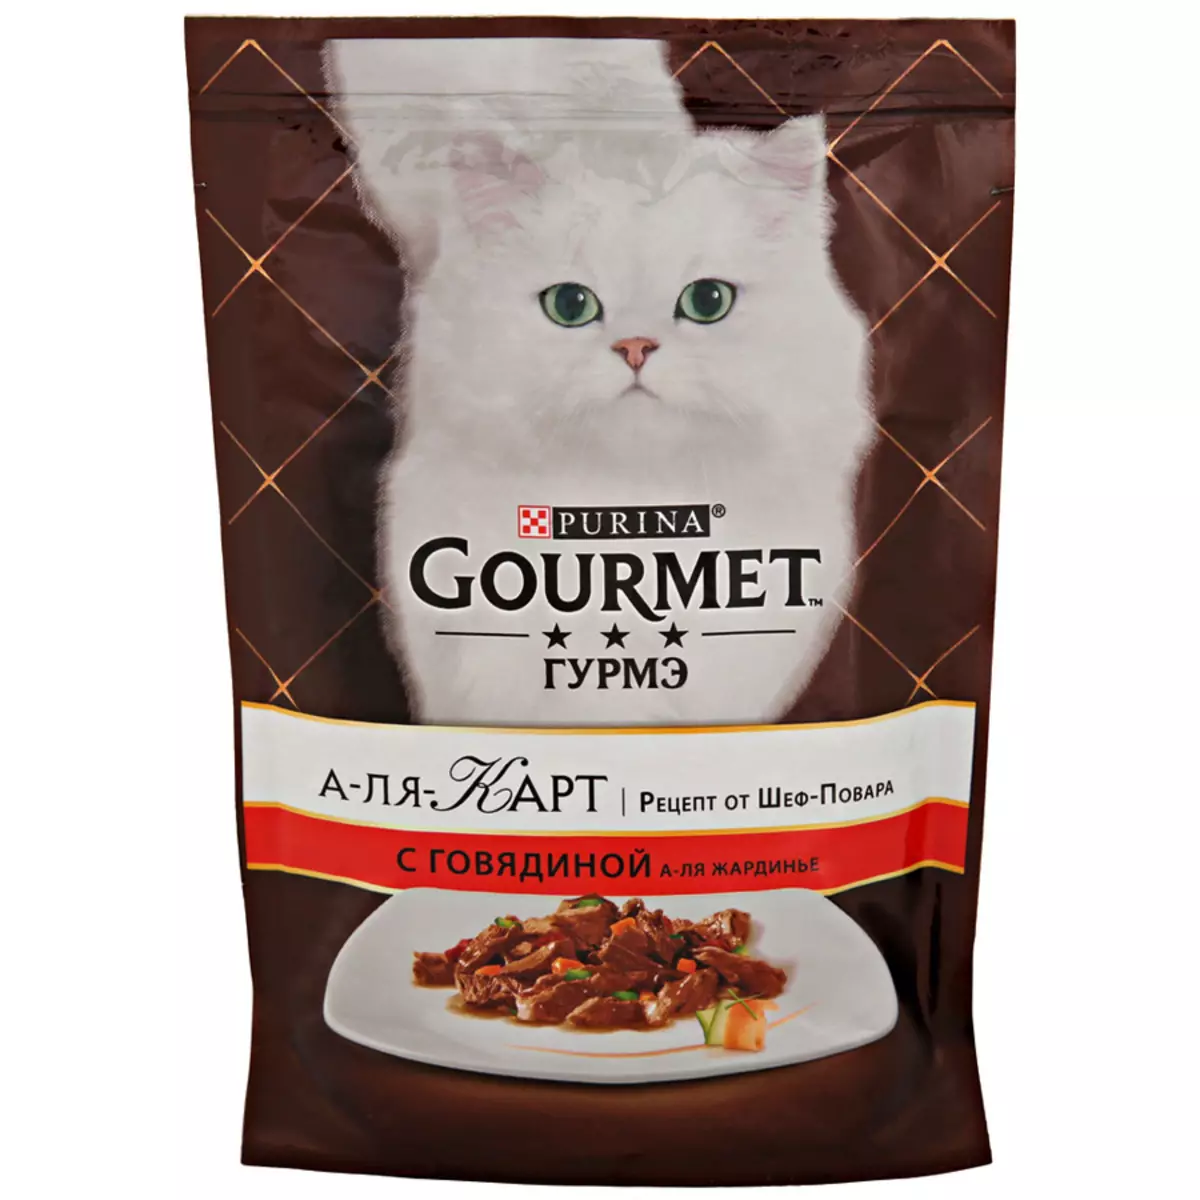 Gourmet: katu elikadura eta purina kittens, pate bustiak eta felino kontserbak, haien konposizioa, berrikuspenak 22711_40